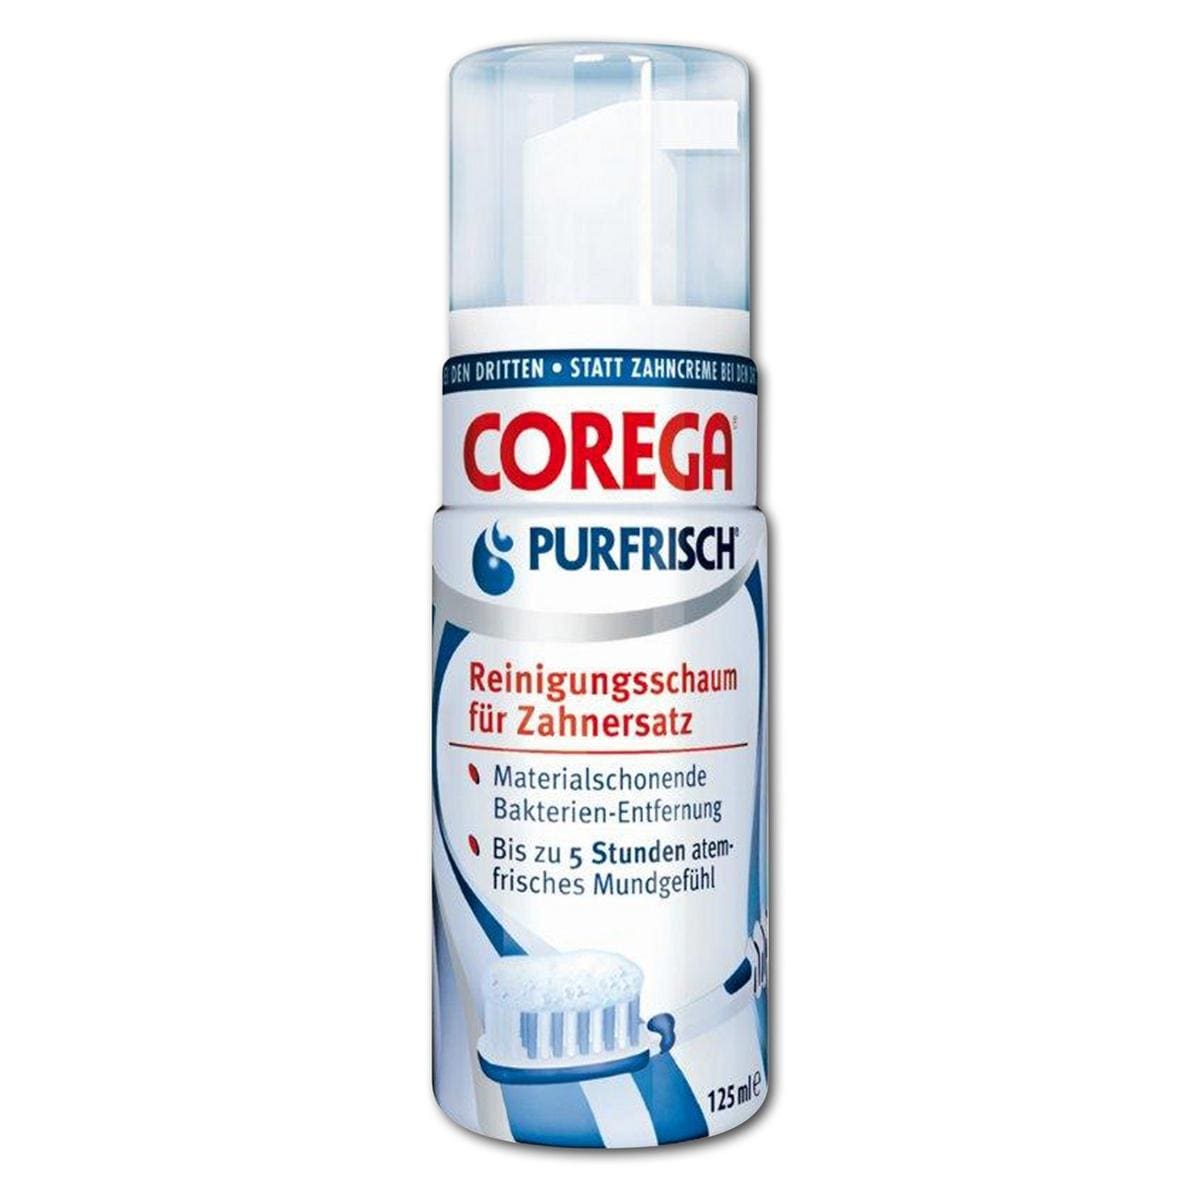 Corega® Purfrisch Reinigungsschaum - Flasche 12 x 125 ml